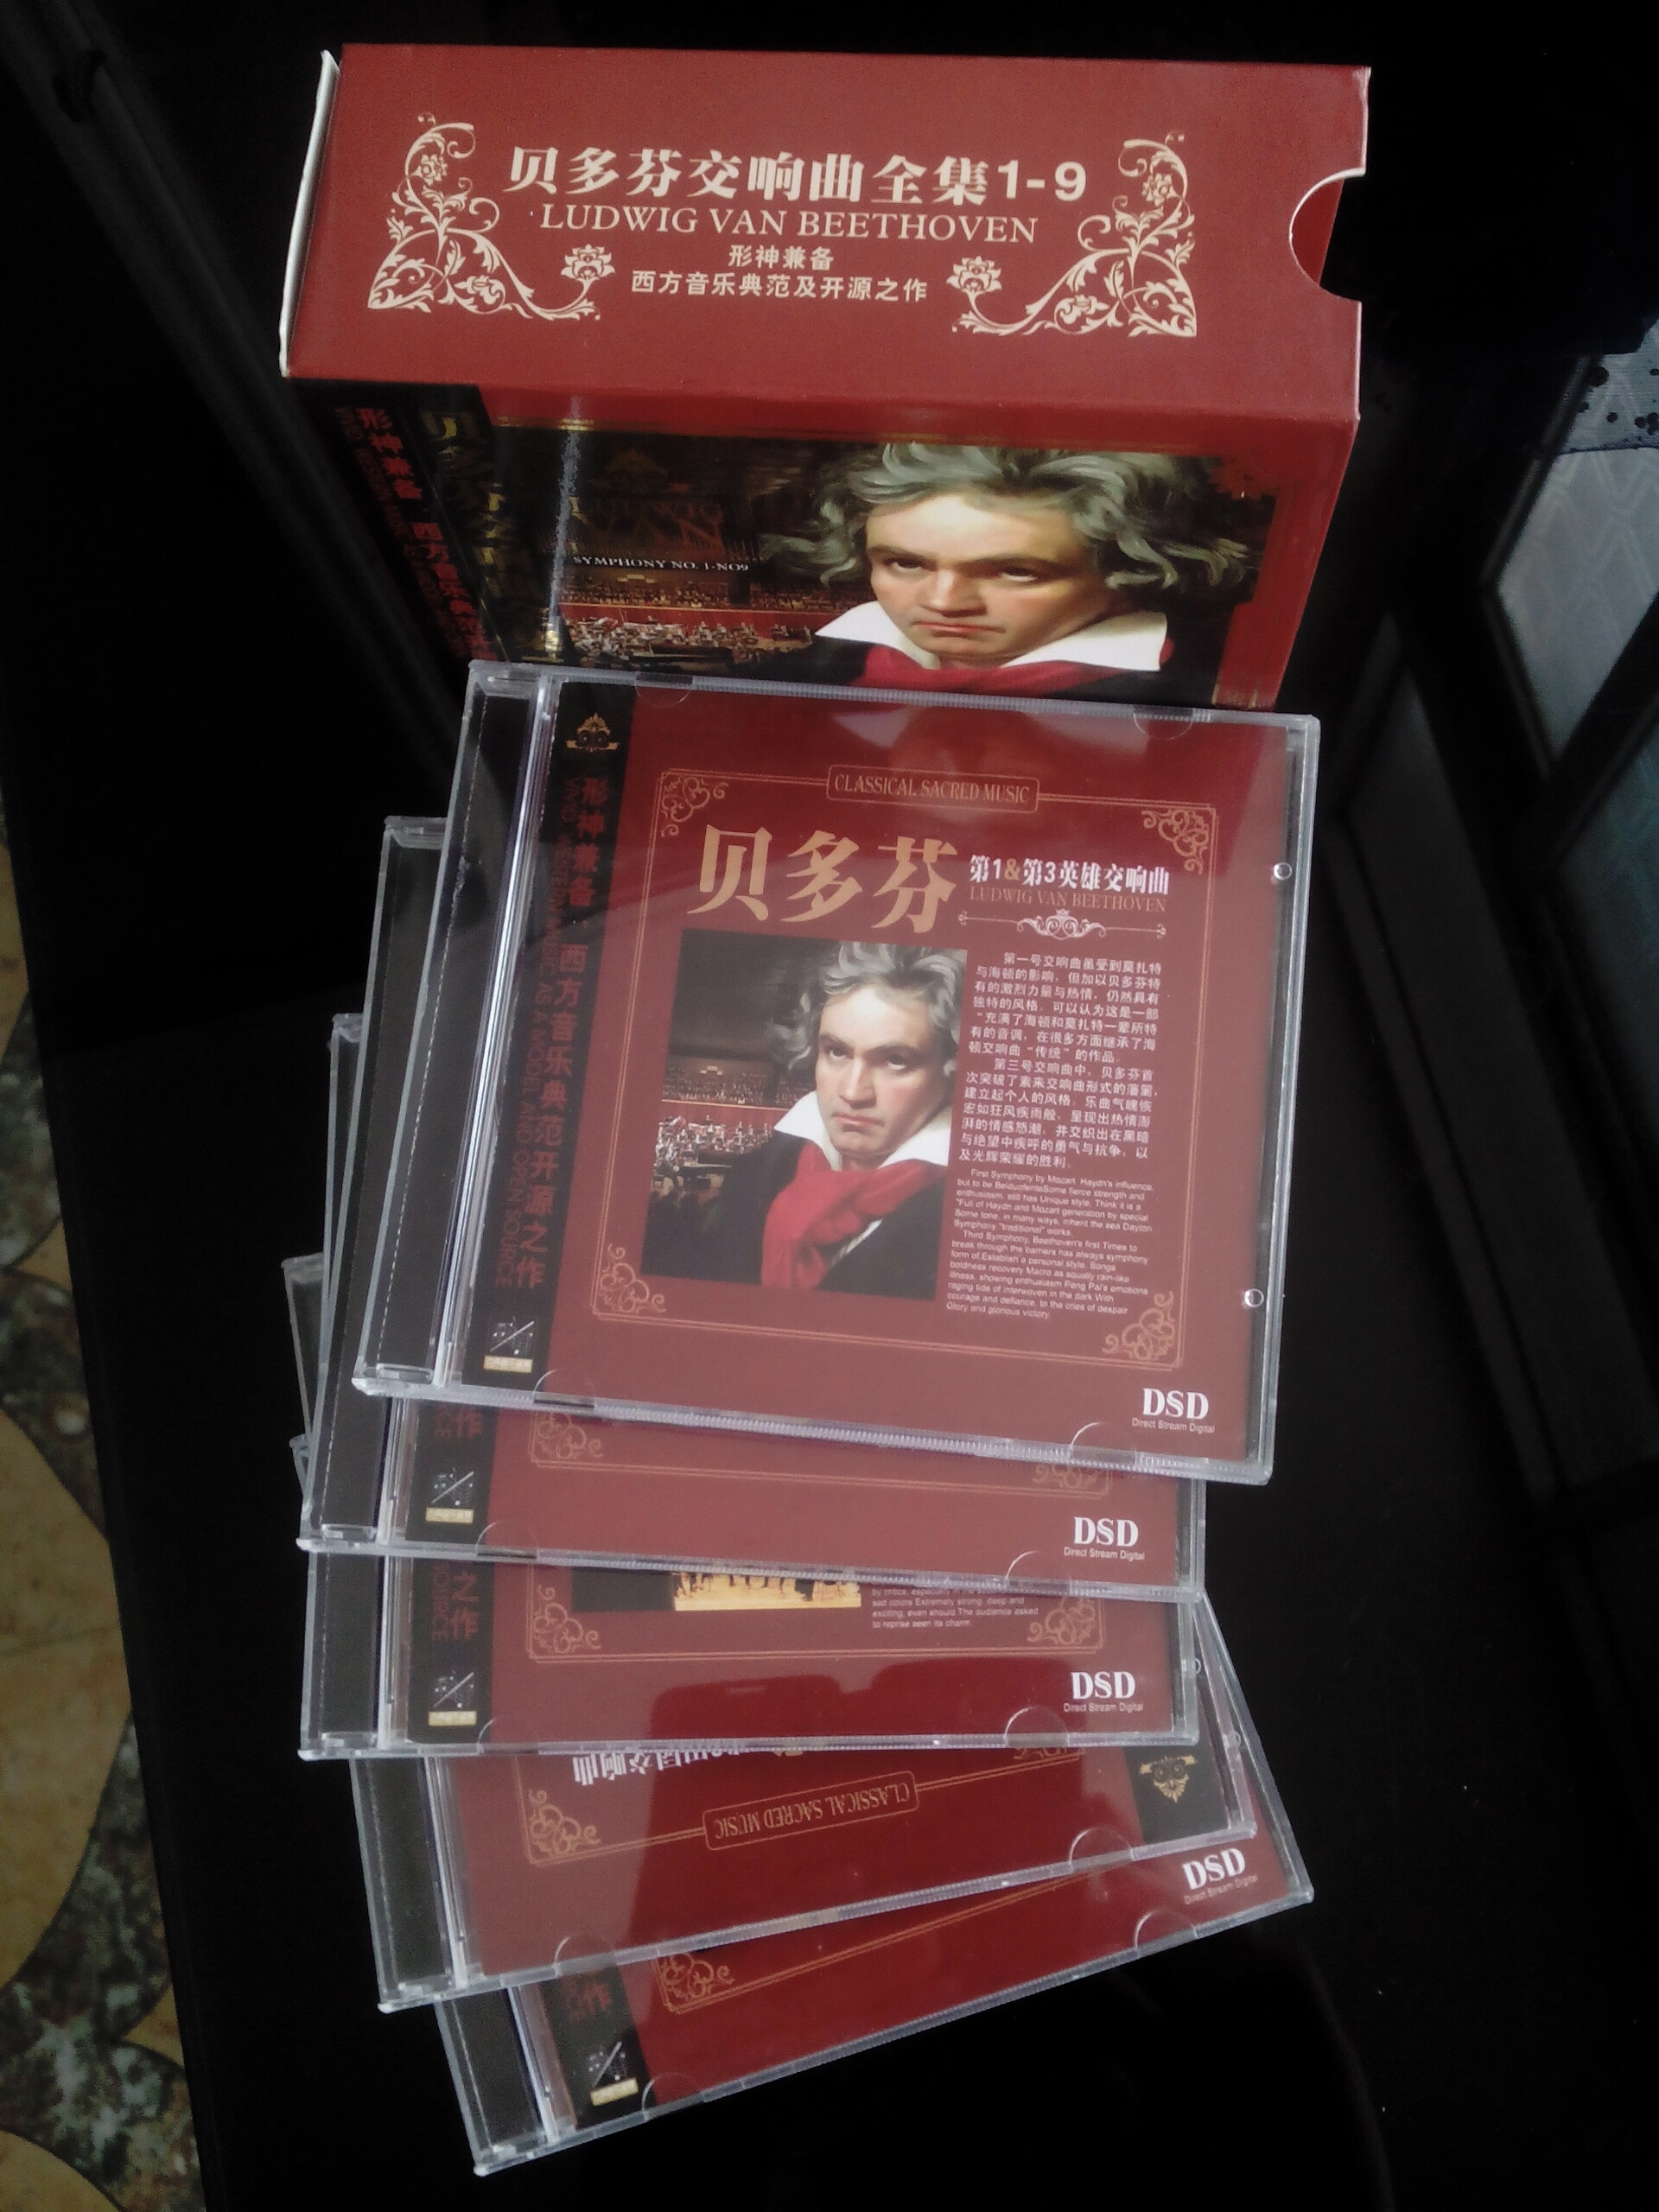 卡拉扬-《贝多芬交响曲全集1-9》24金碟 DSD原版引进